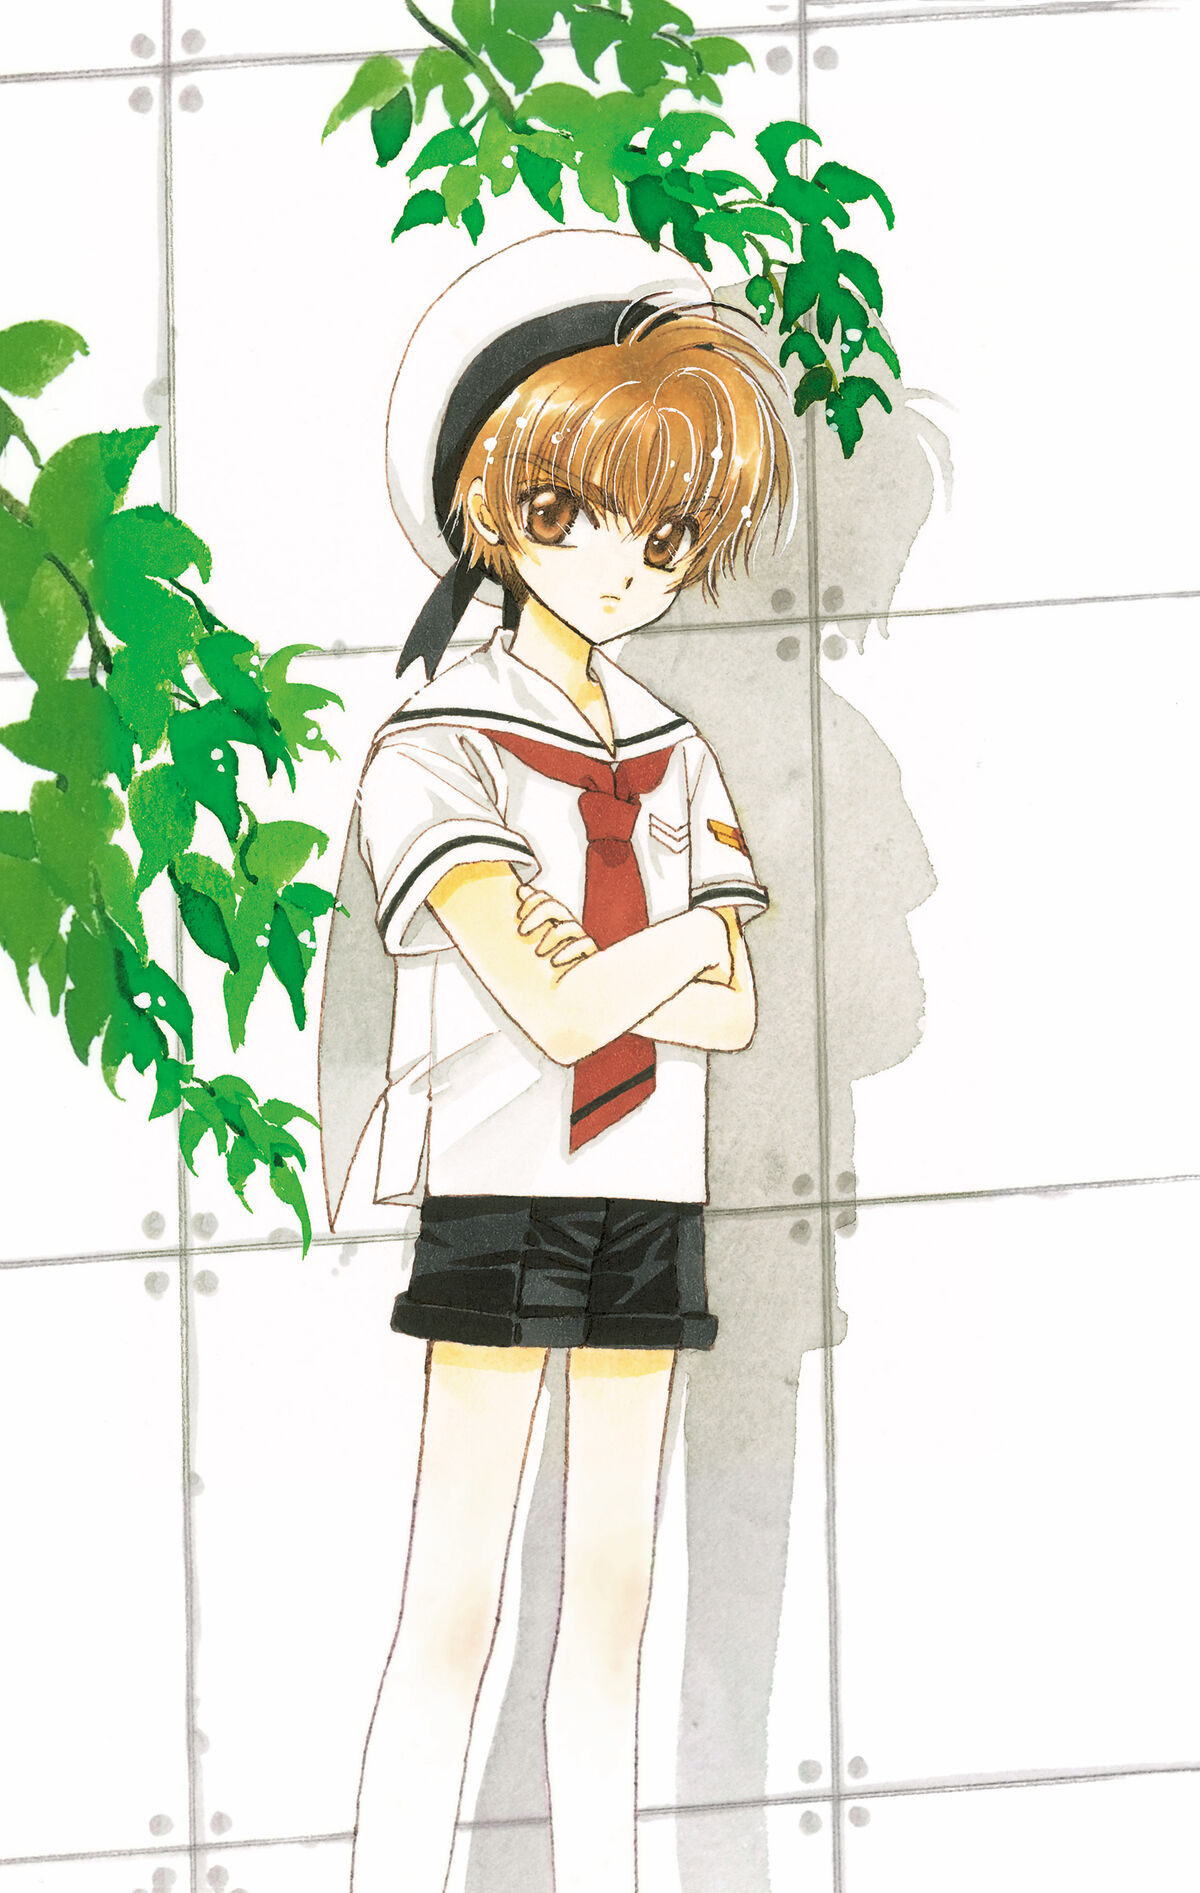 HD wallpaper: Anime, Cardcaptor Sakura, Sakura Kinomoto, Syaoran Li, Tomoyo  Daidouji | Wallpaper Flare